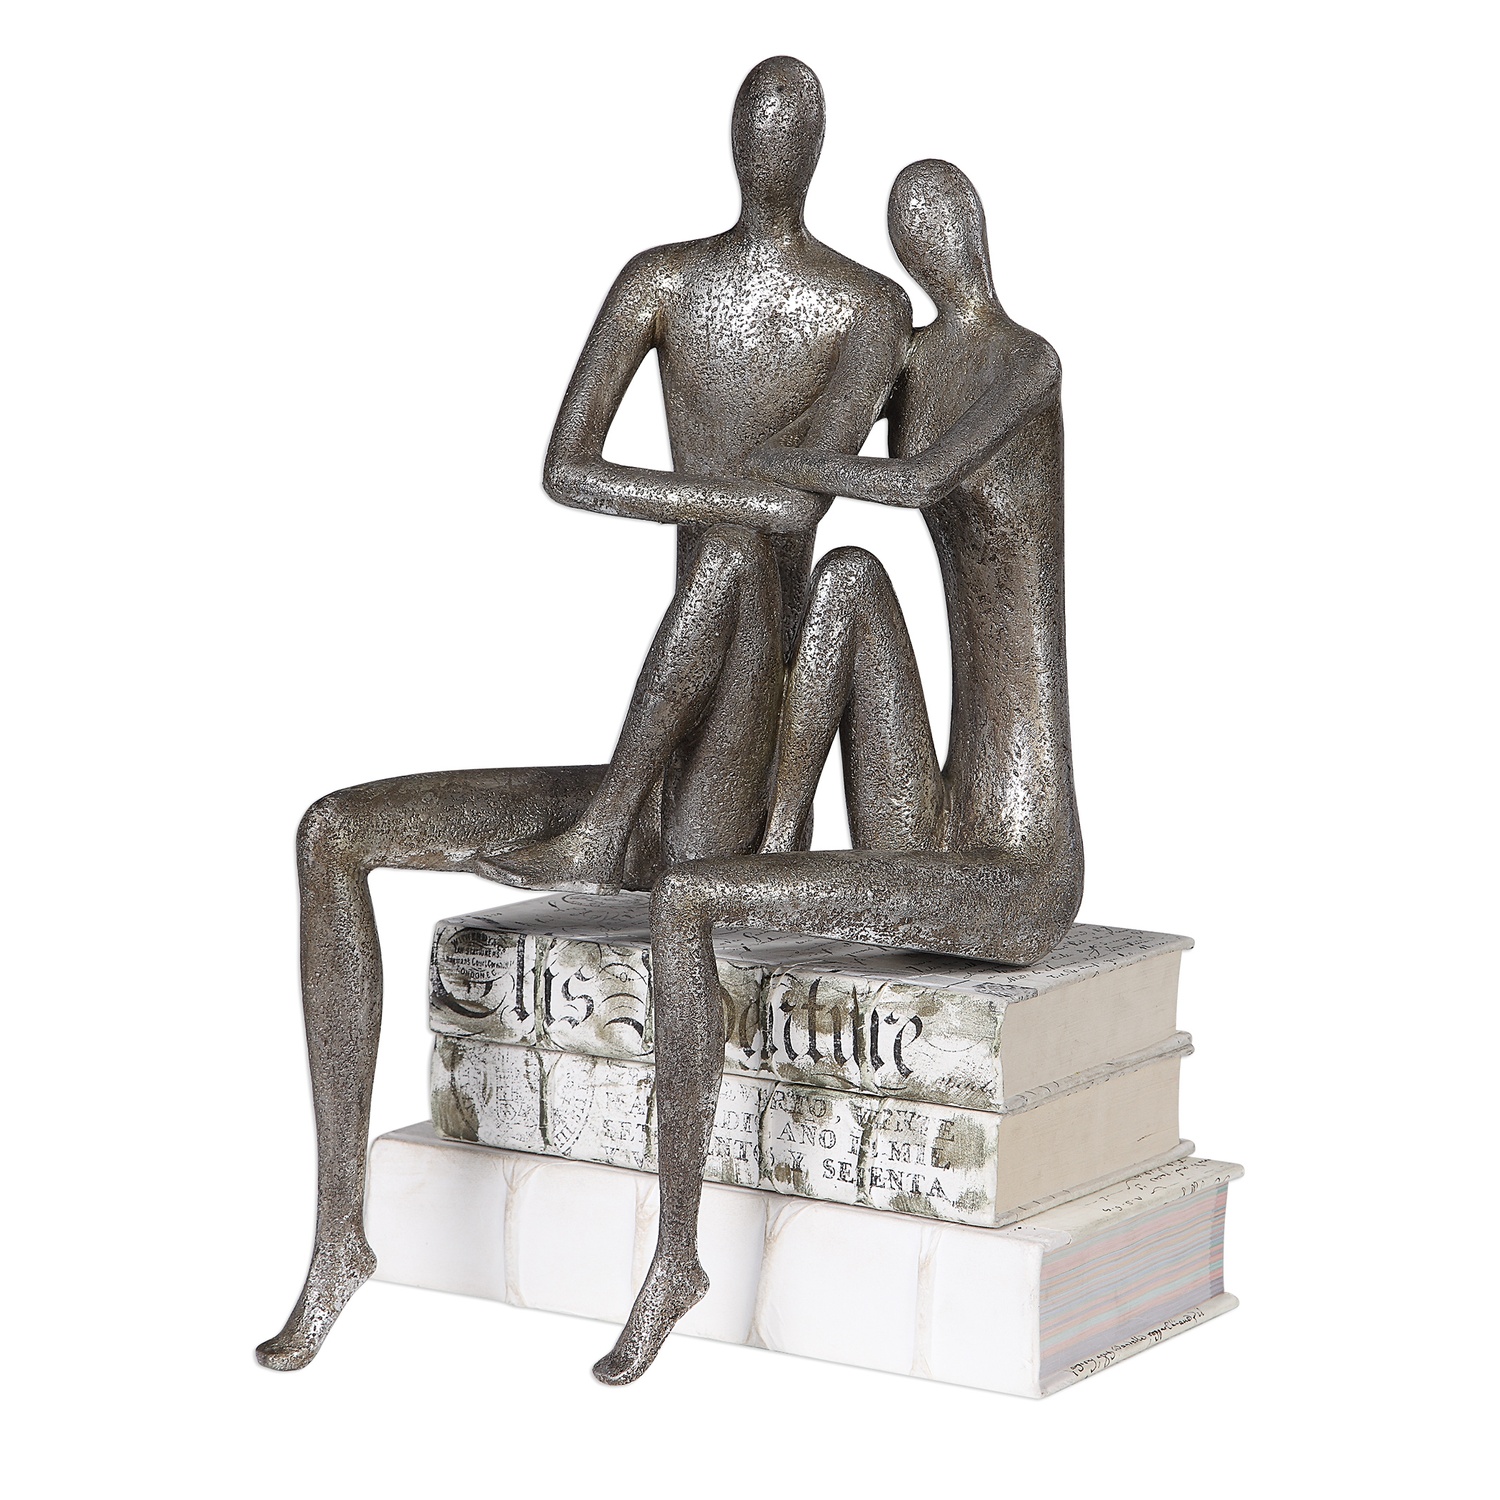 Courtship-Figurines & Sculptures